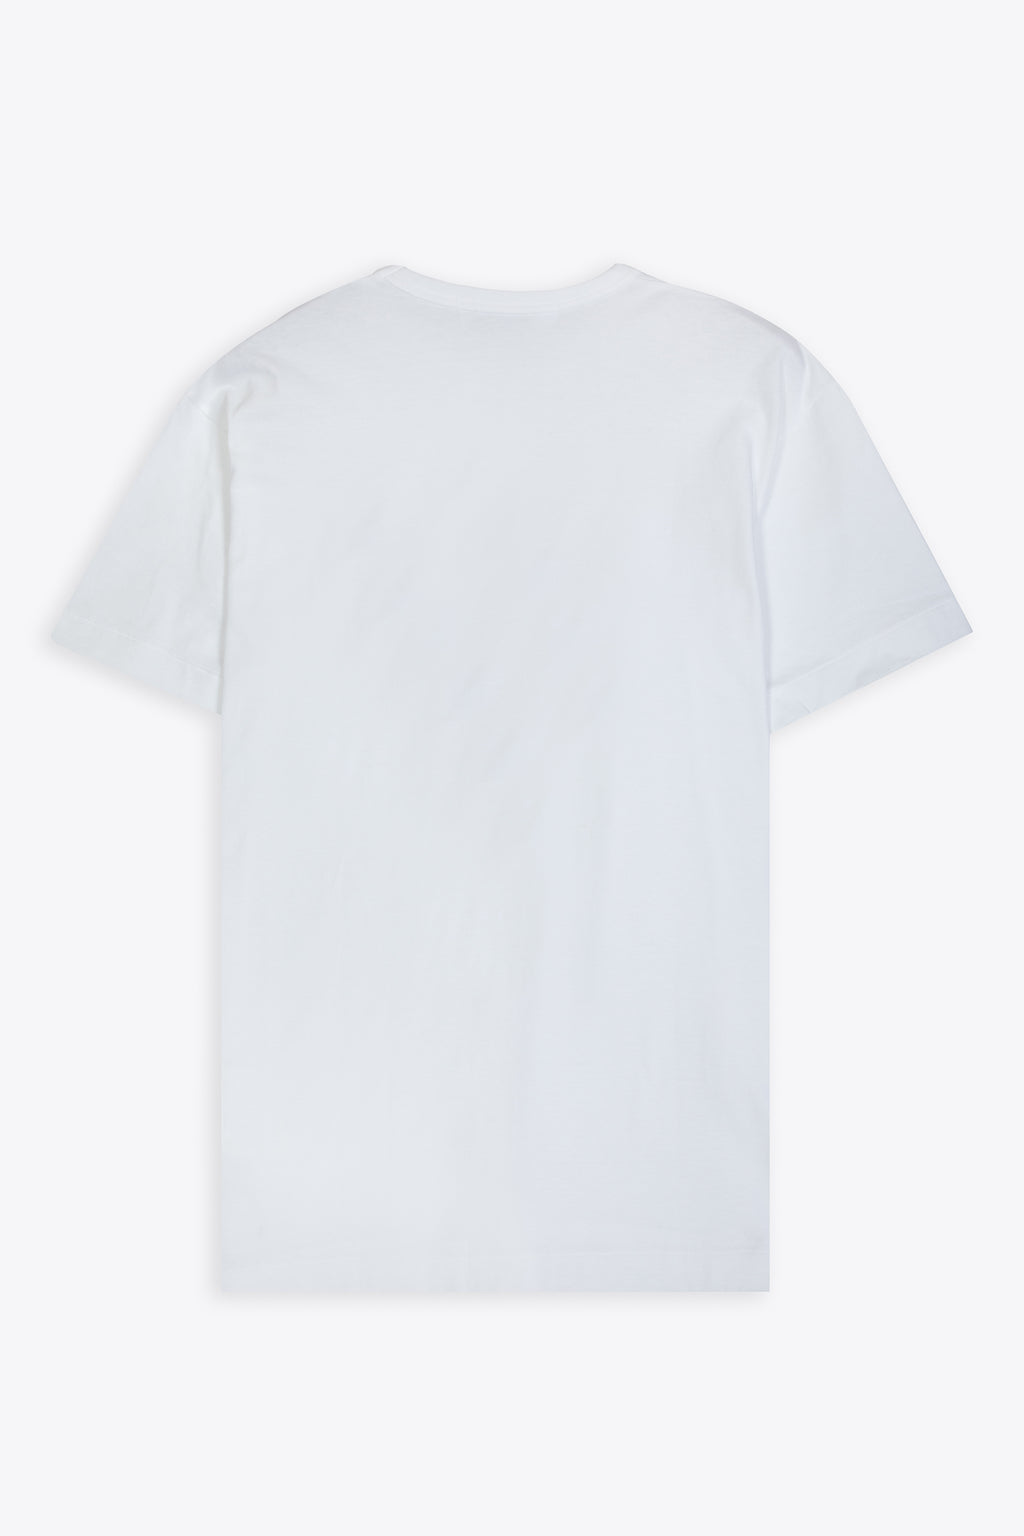 alt-image__T-shirt-bianca-con-patch-cuore-grande